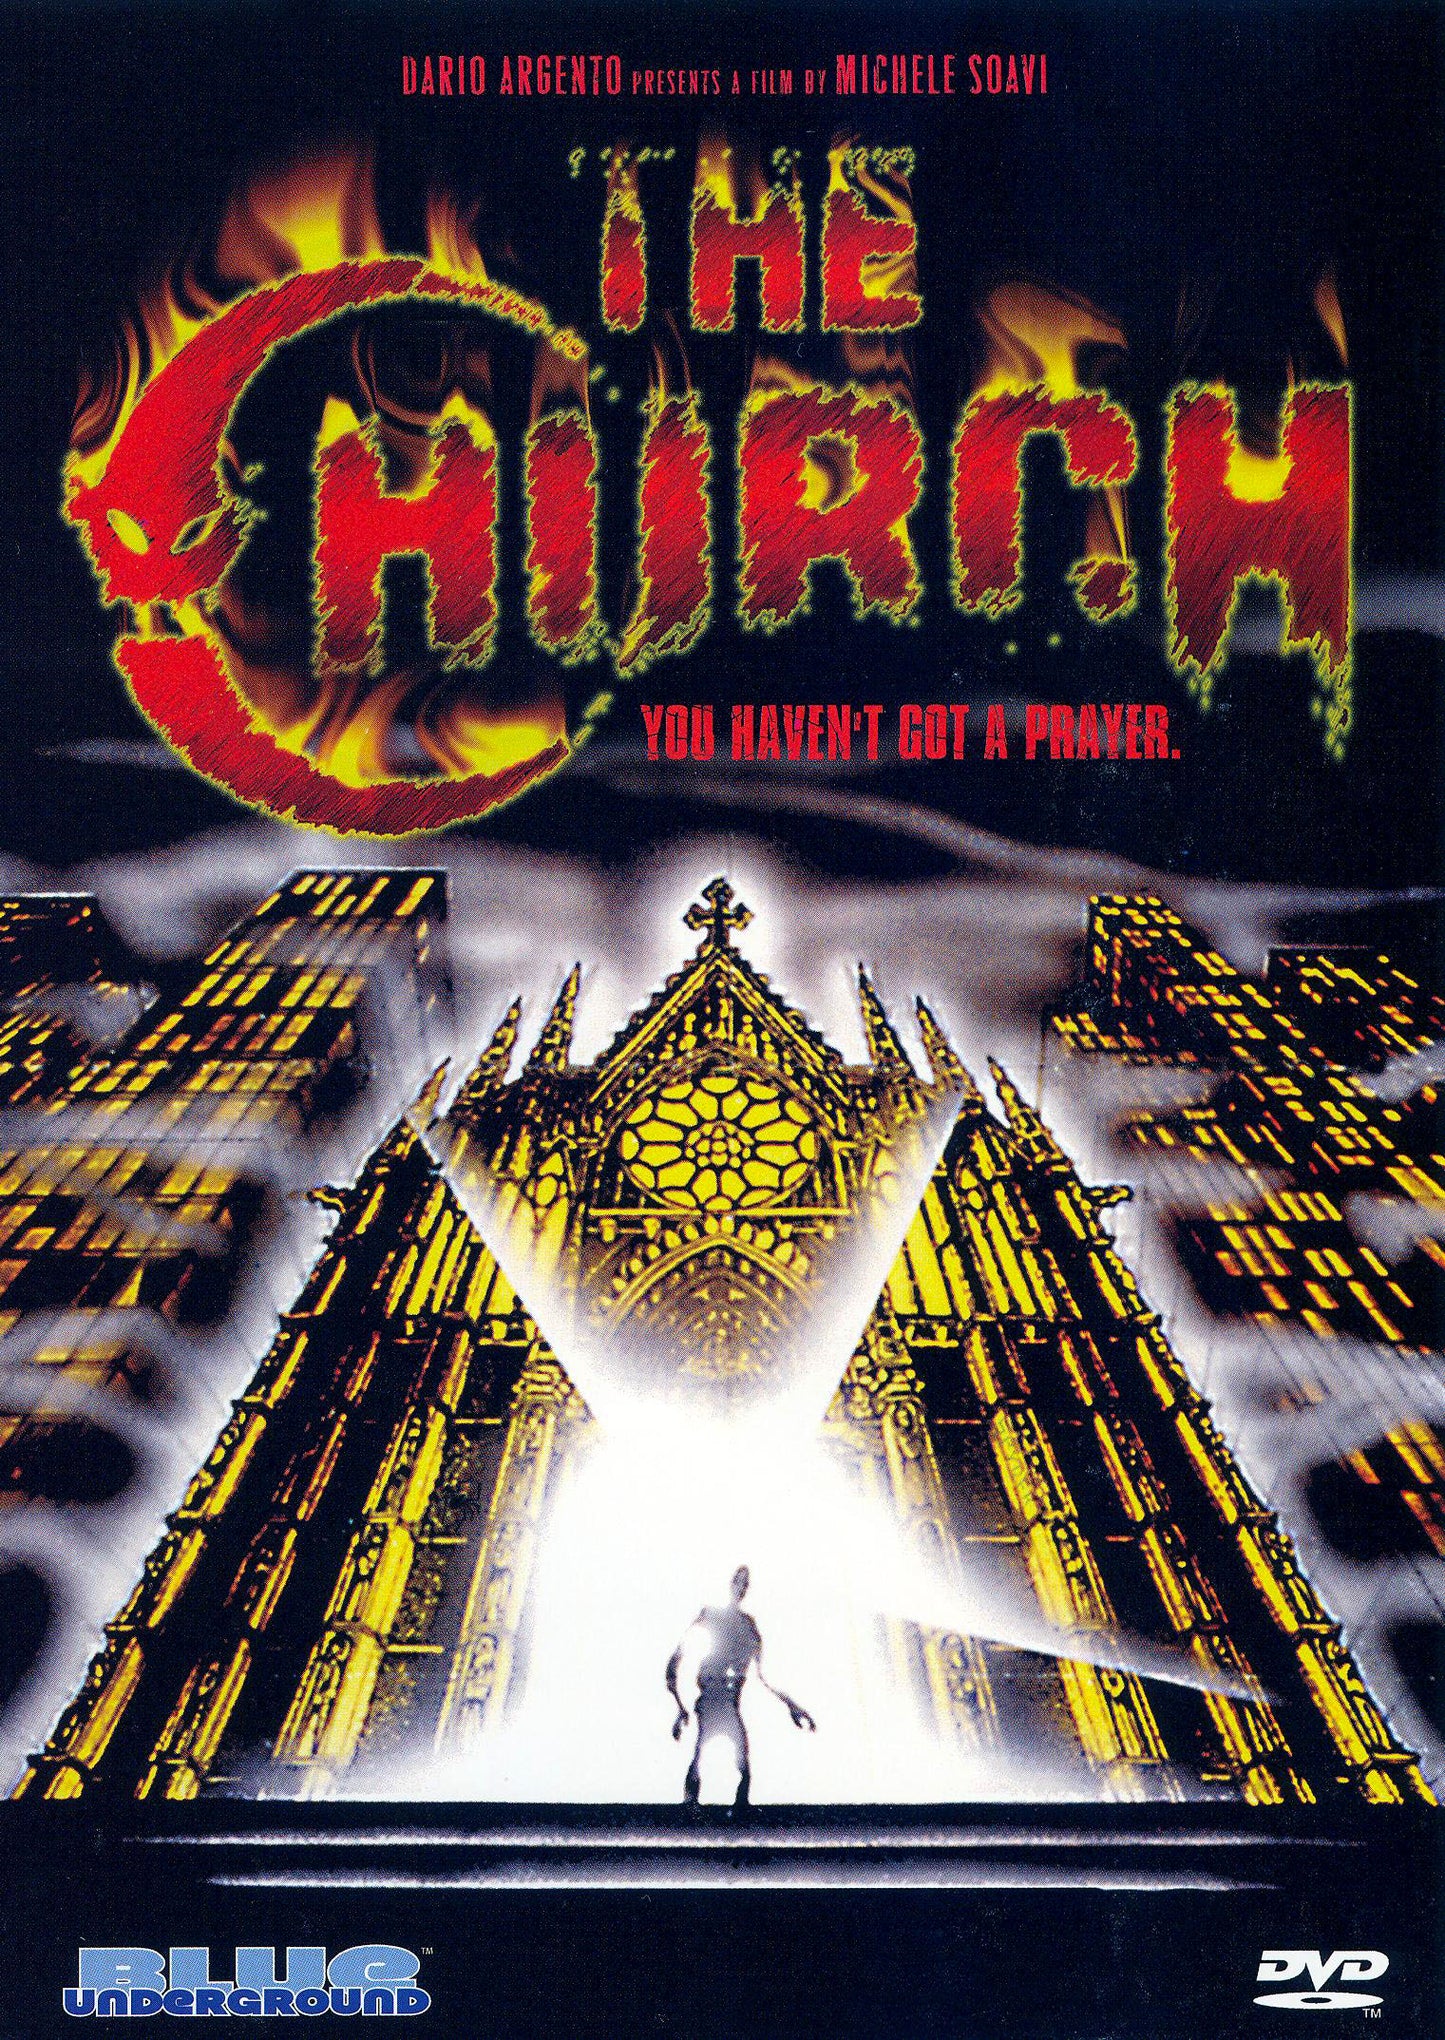 Church cover art